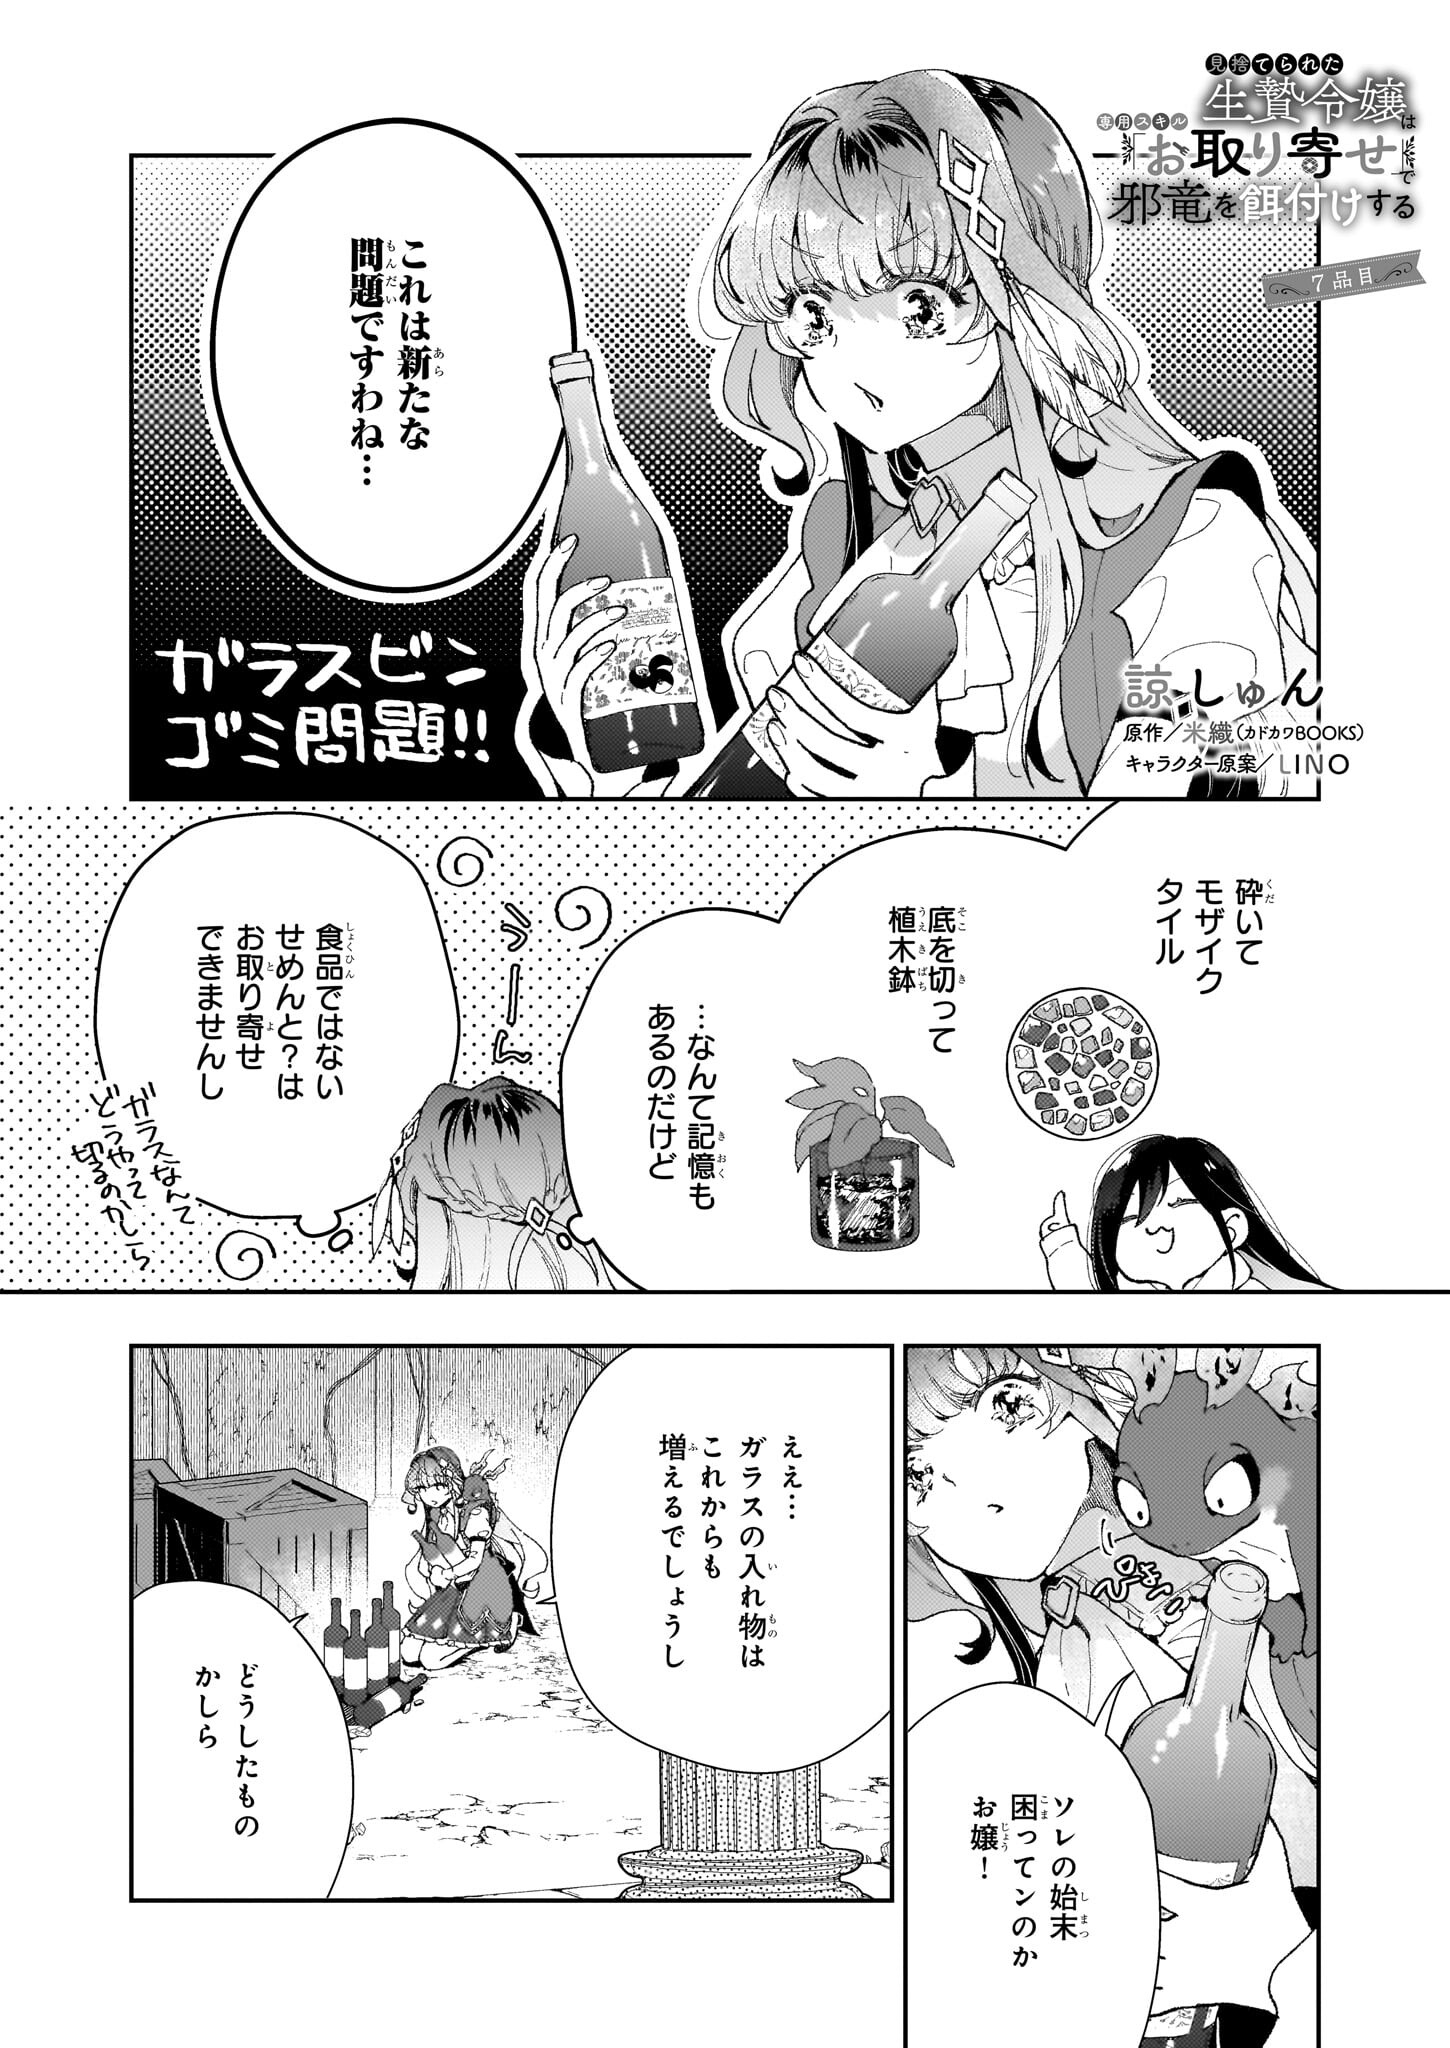 Misuterareta Ikenie Reijou wa Senyou Skill Otoriyose de Jaryuu wo Ezuke suru - Chapter 7 - Page 1